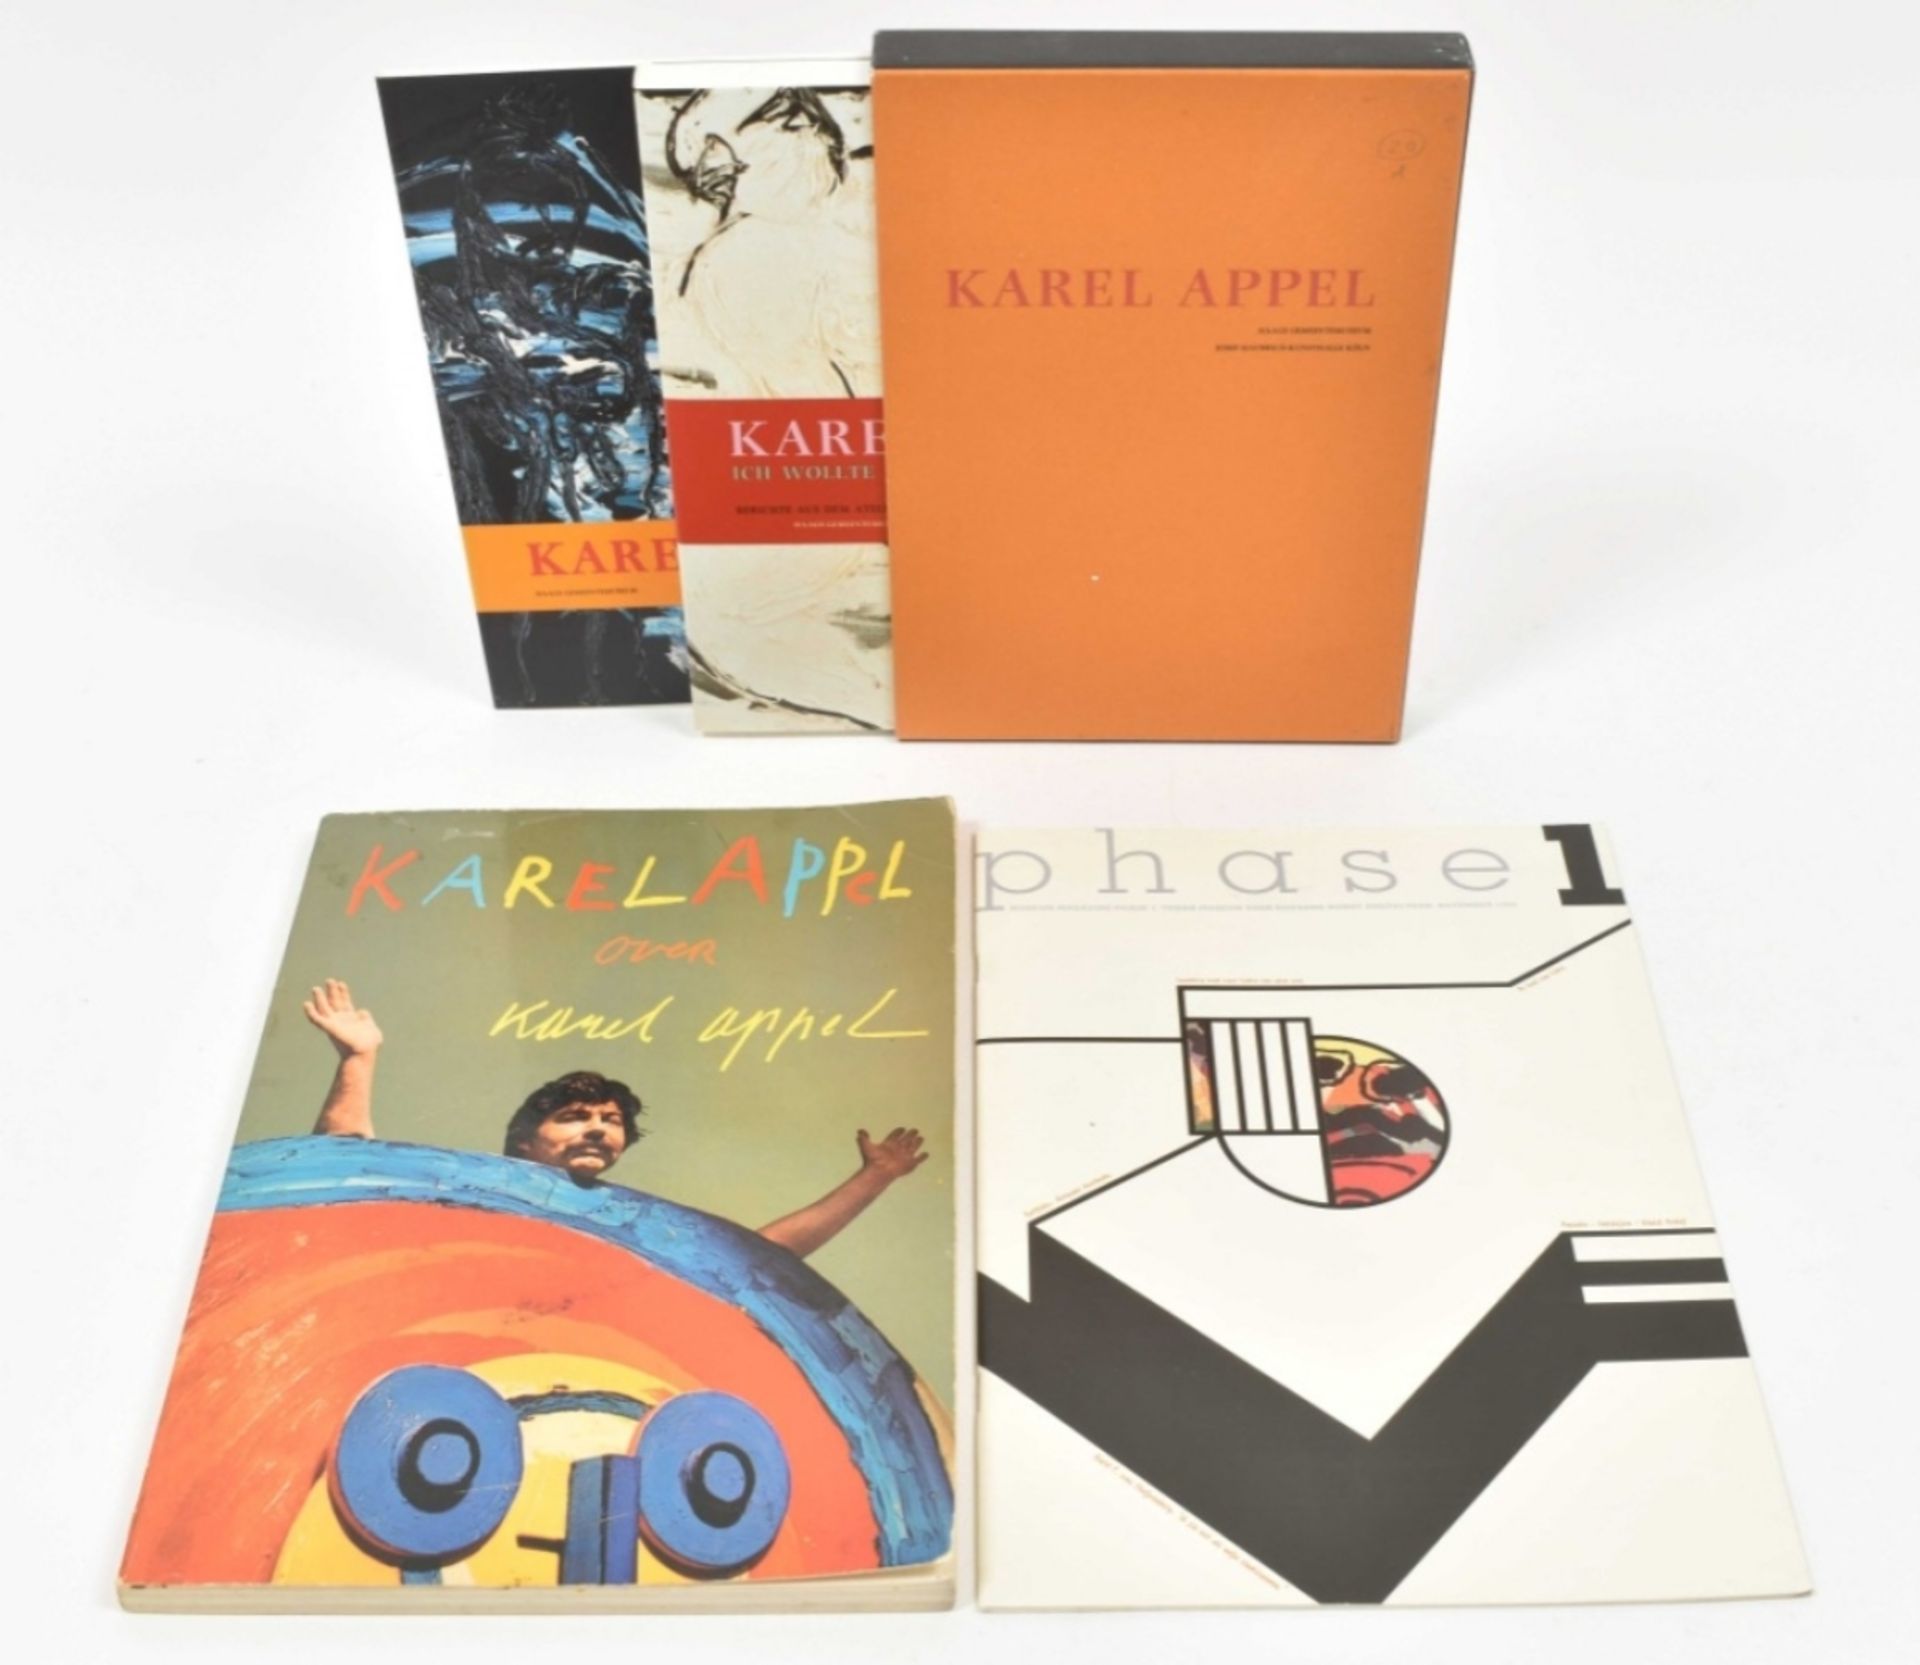 31 publications on Karel Appel and Cobra artists: Karel Appel - Image 8 of 8